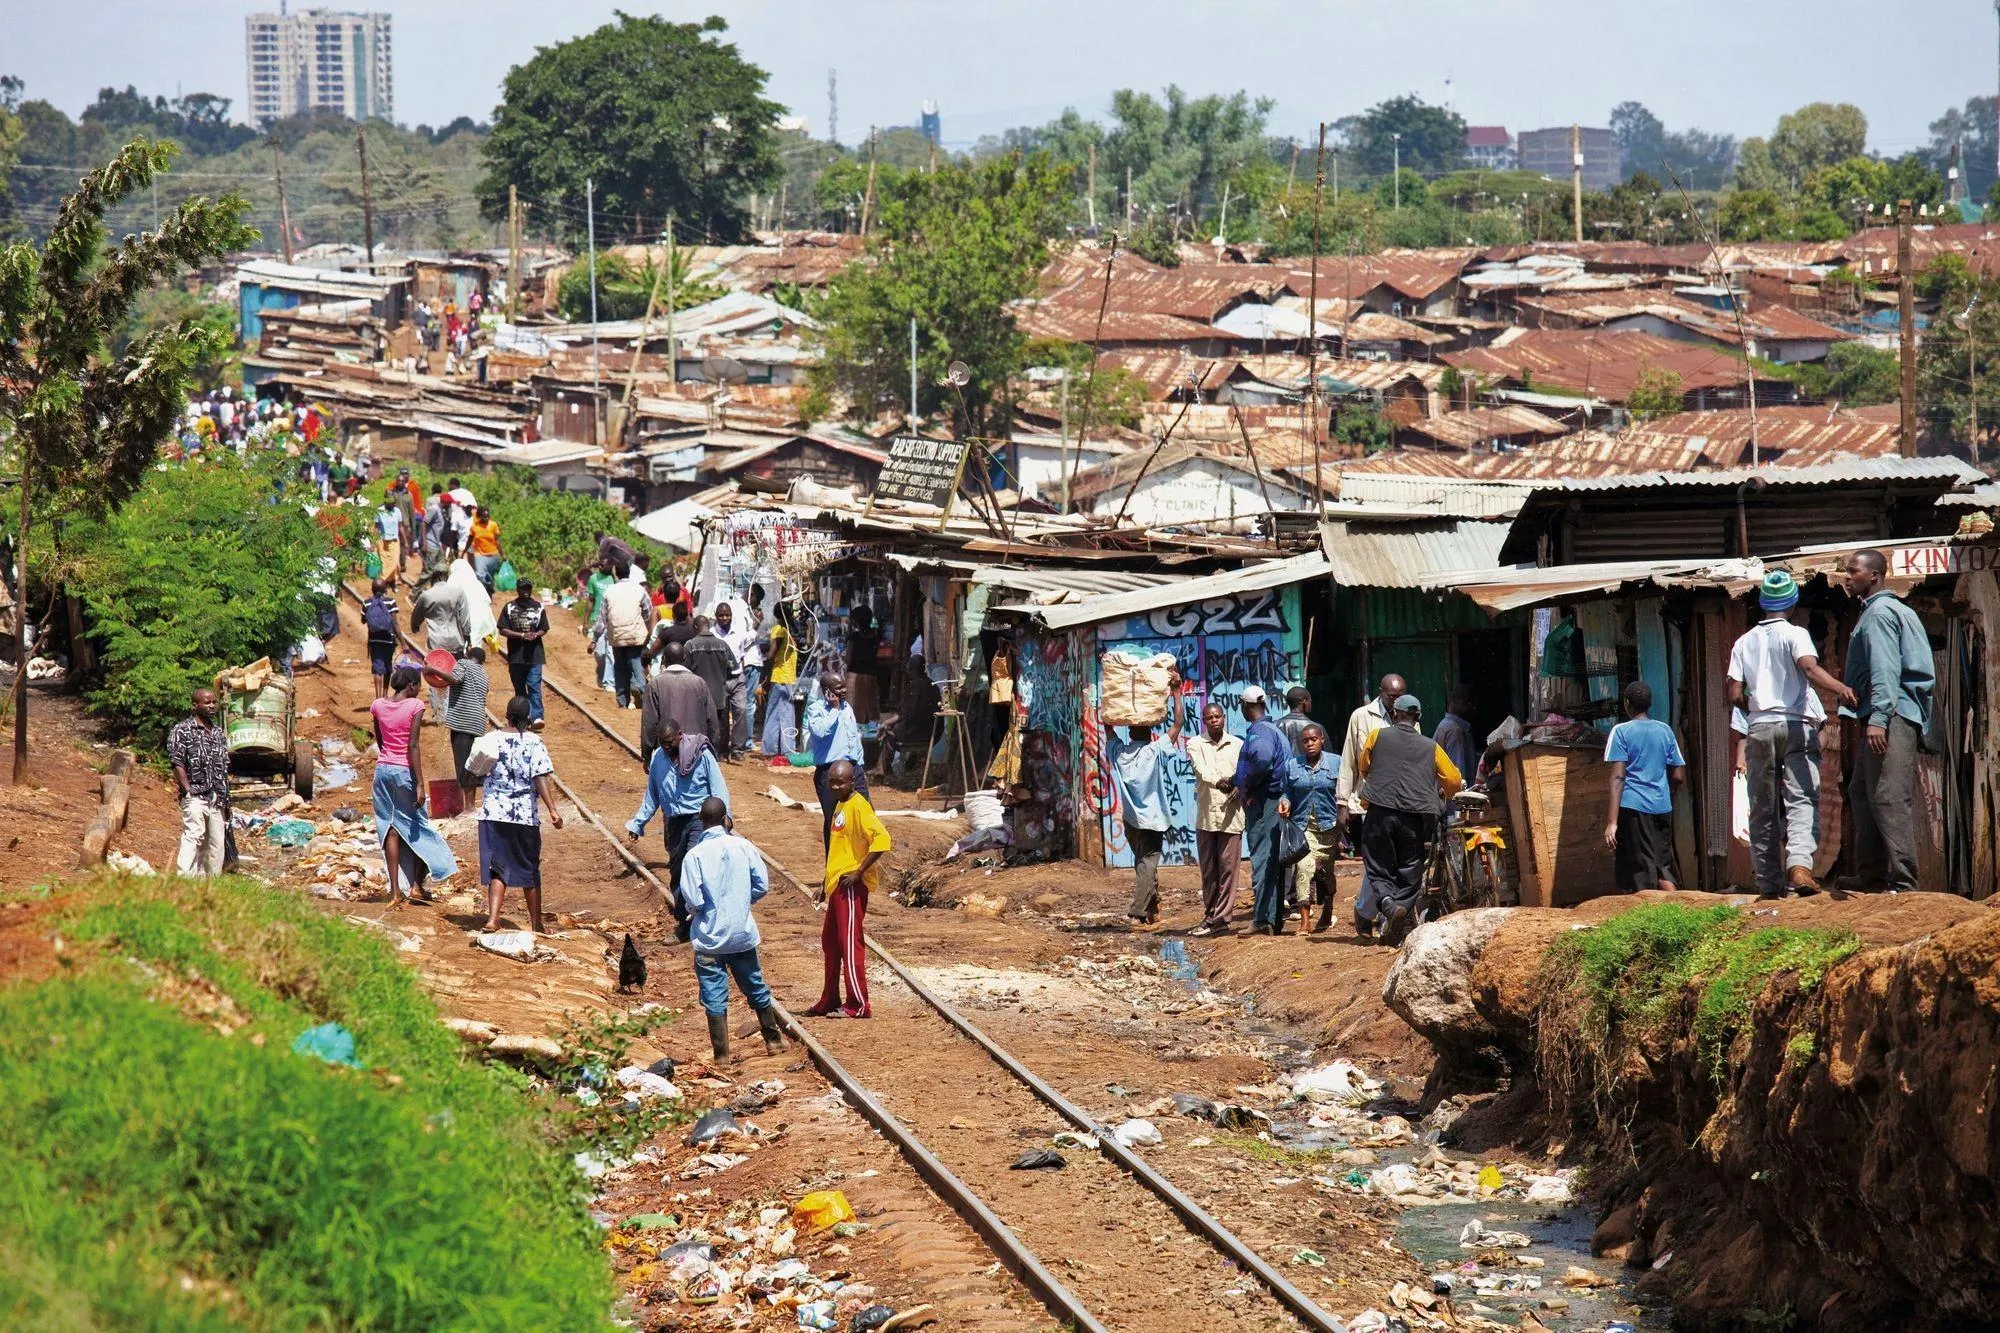 Le bidonville de Kibera est situé à Nairobi, la capitale du Kenya. Un tiers de la population de la ville y habite.